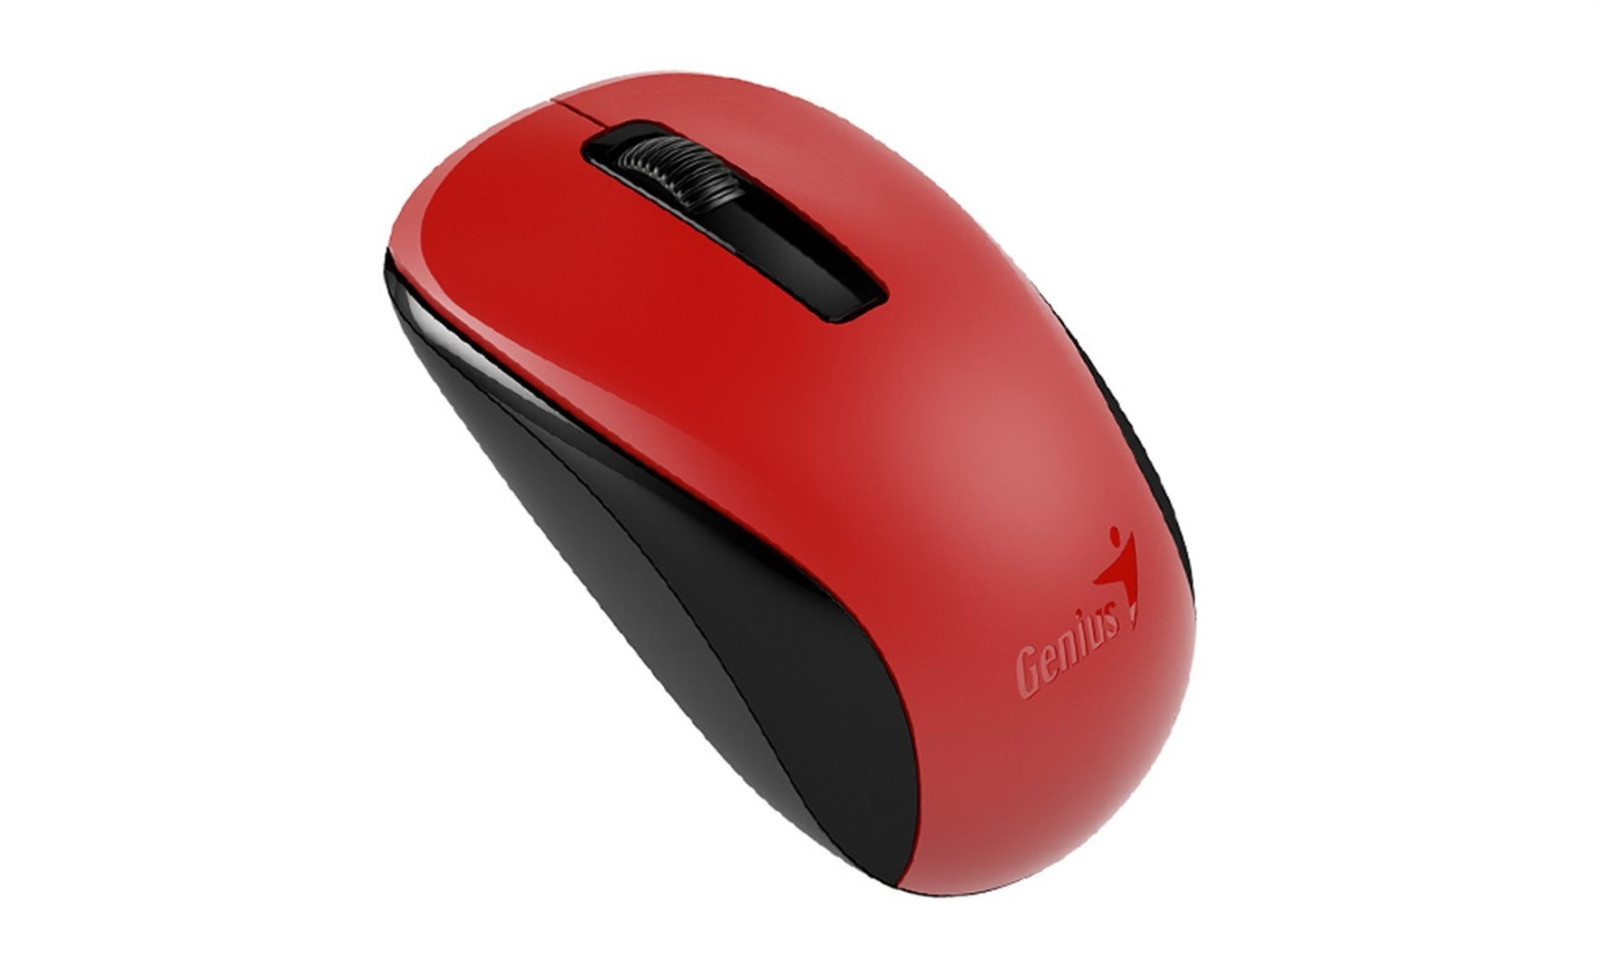 GENIUS myš NX-7005/ 1200 dpi/ bezdrôtová/ červená